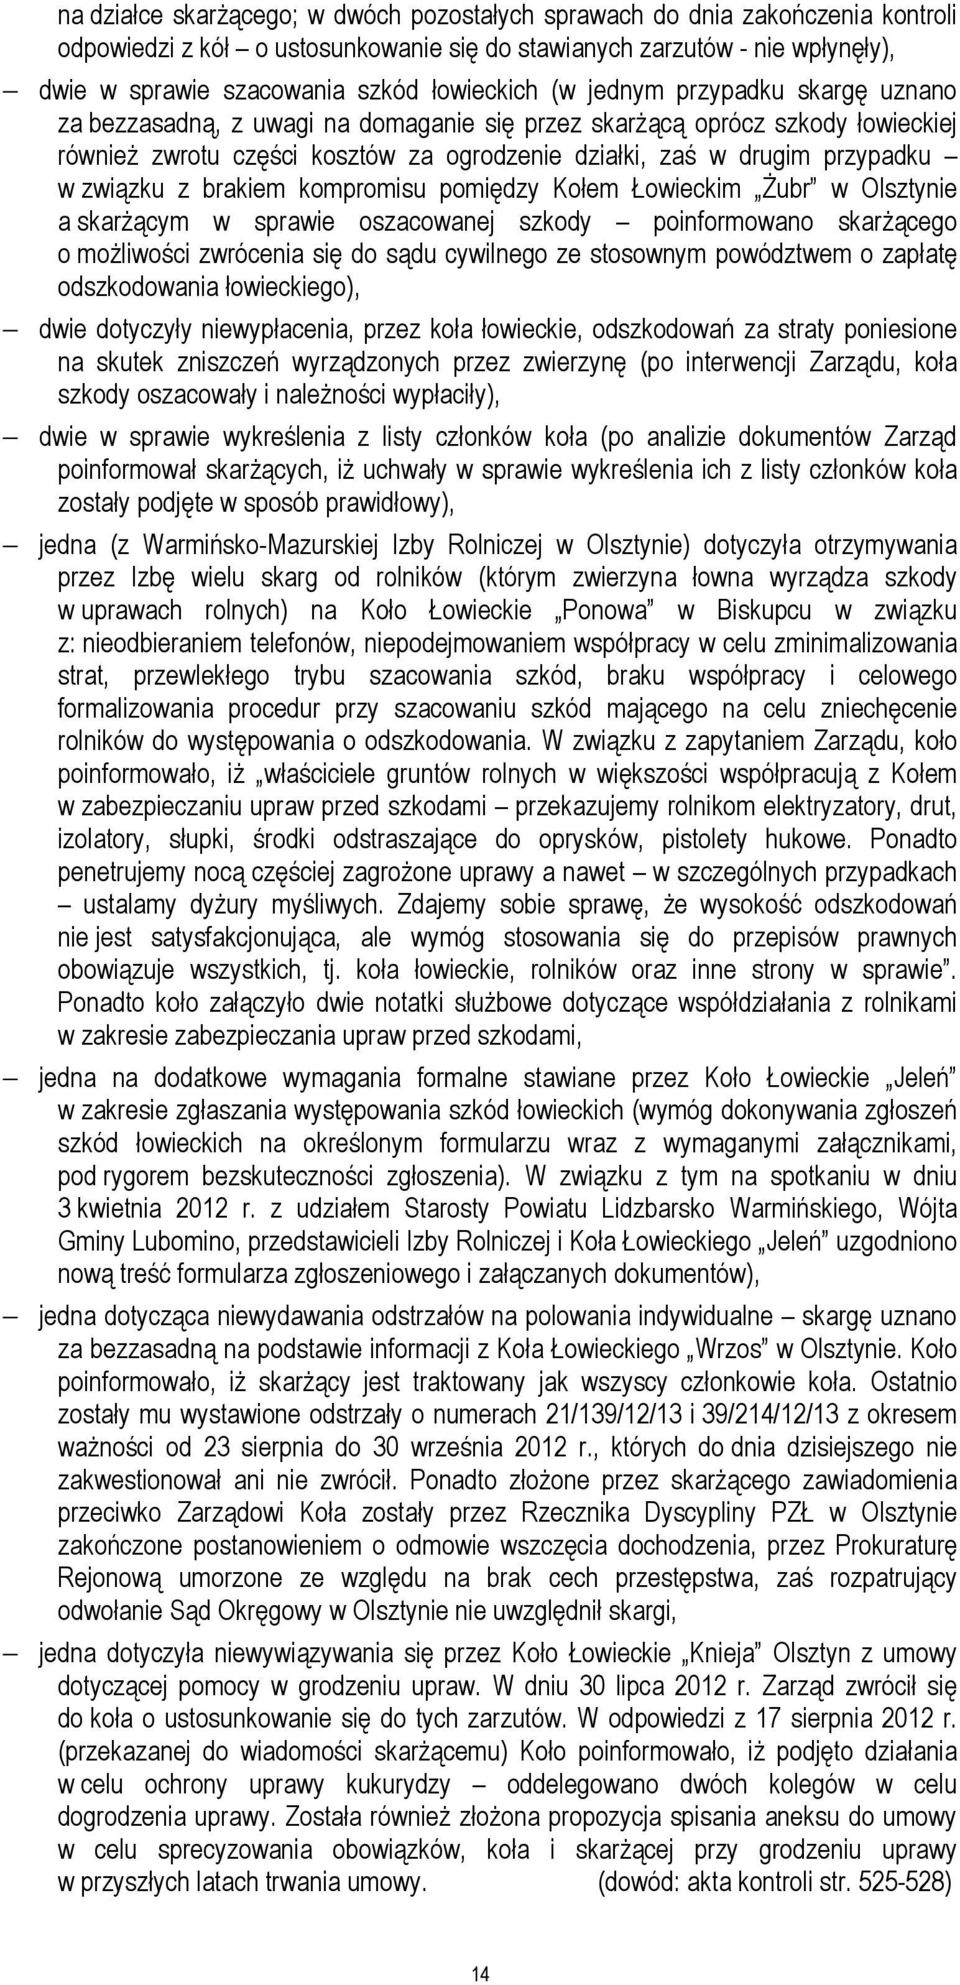 przypadku w związku z brakiem kompromisu pomiędzy Kołem Łowieckim Żubr w Olsztynie a skarżącym w sprawie oszacowanej szkody poinformowano skarżącego o możliwości zwrócenia się do sądu cywilnego ze